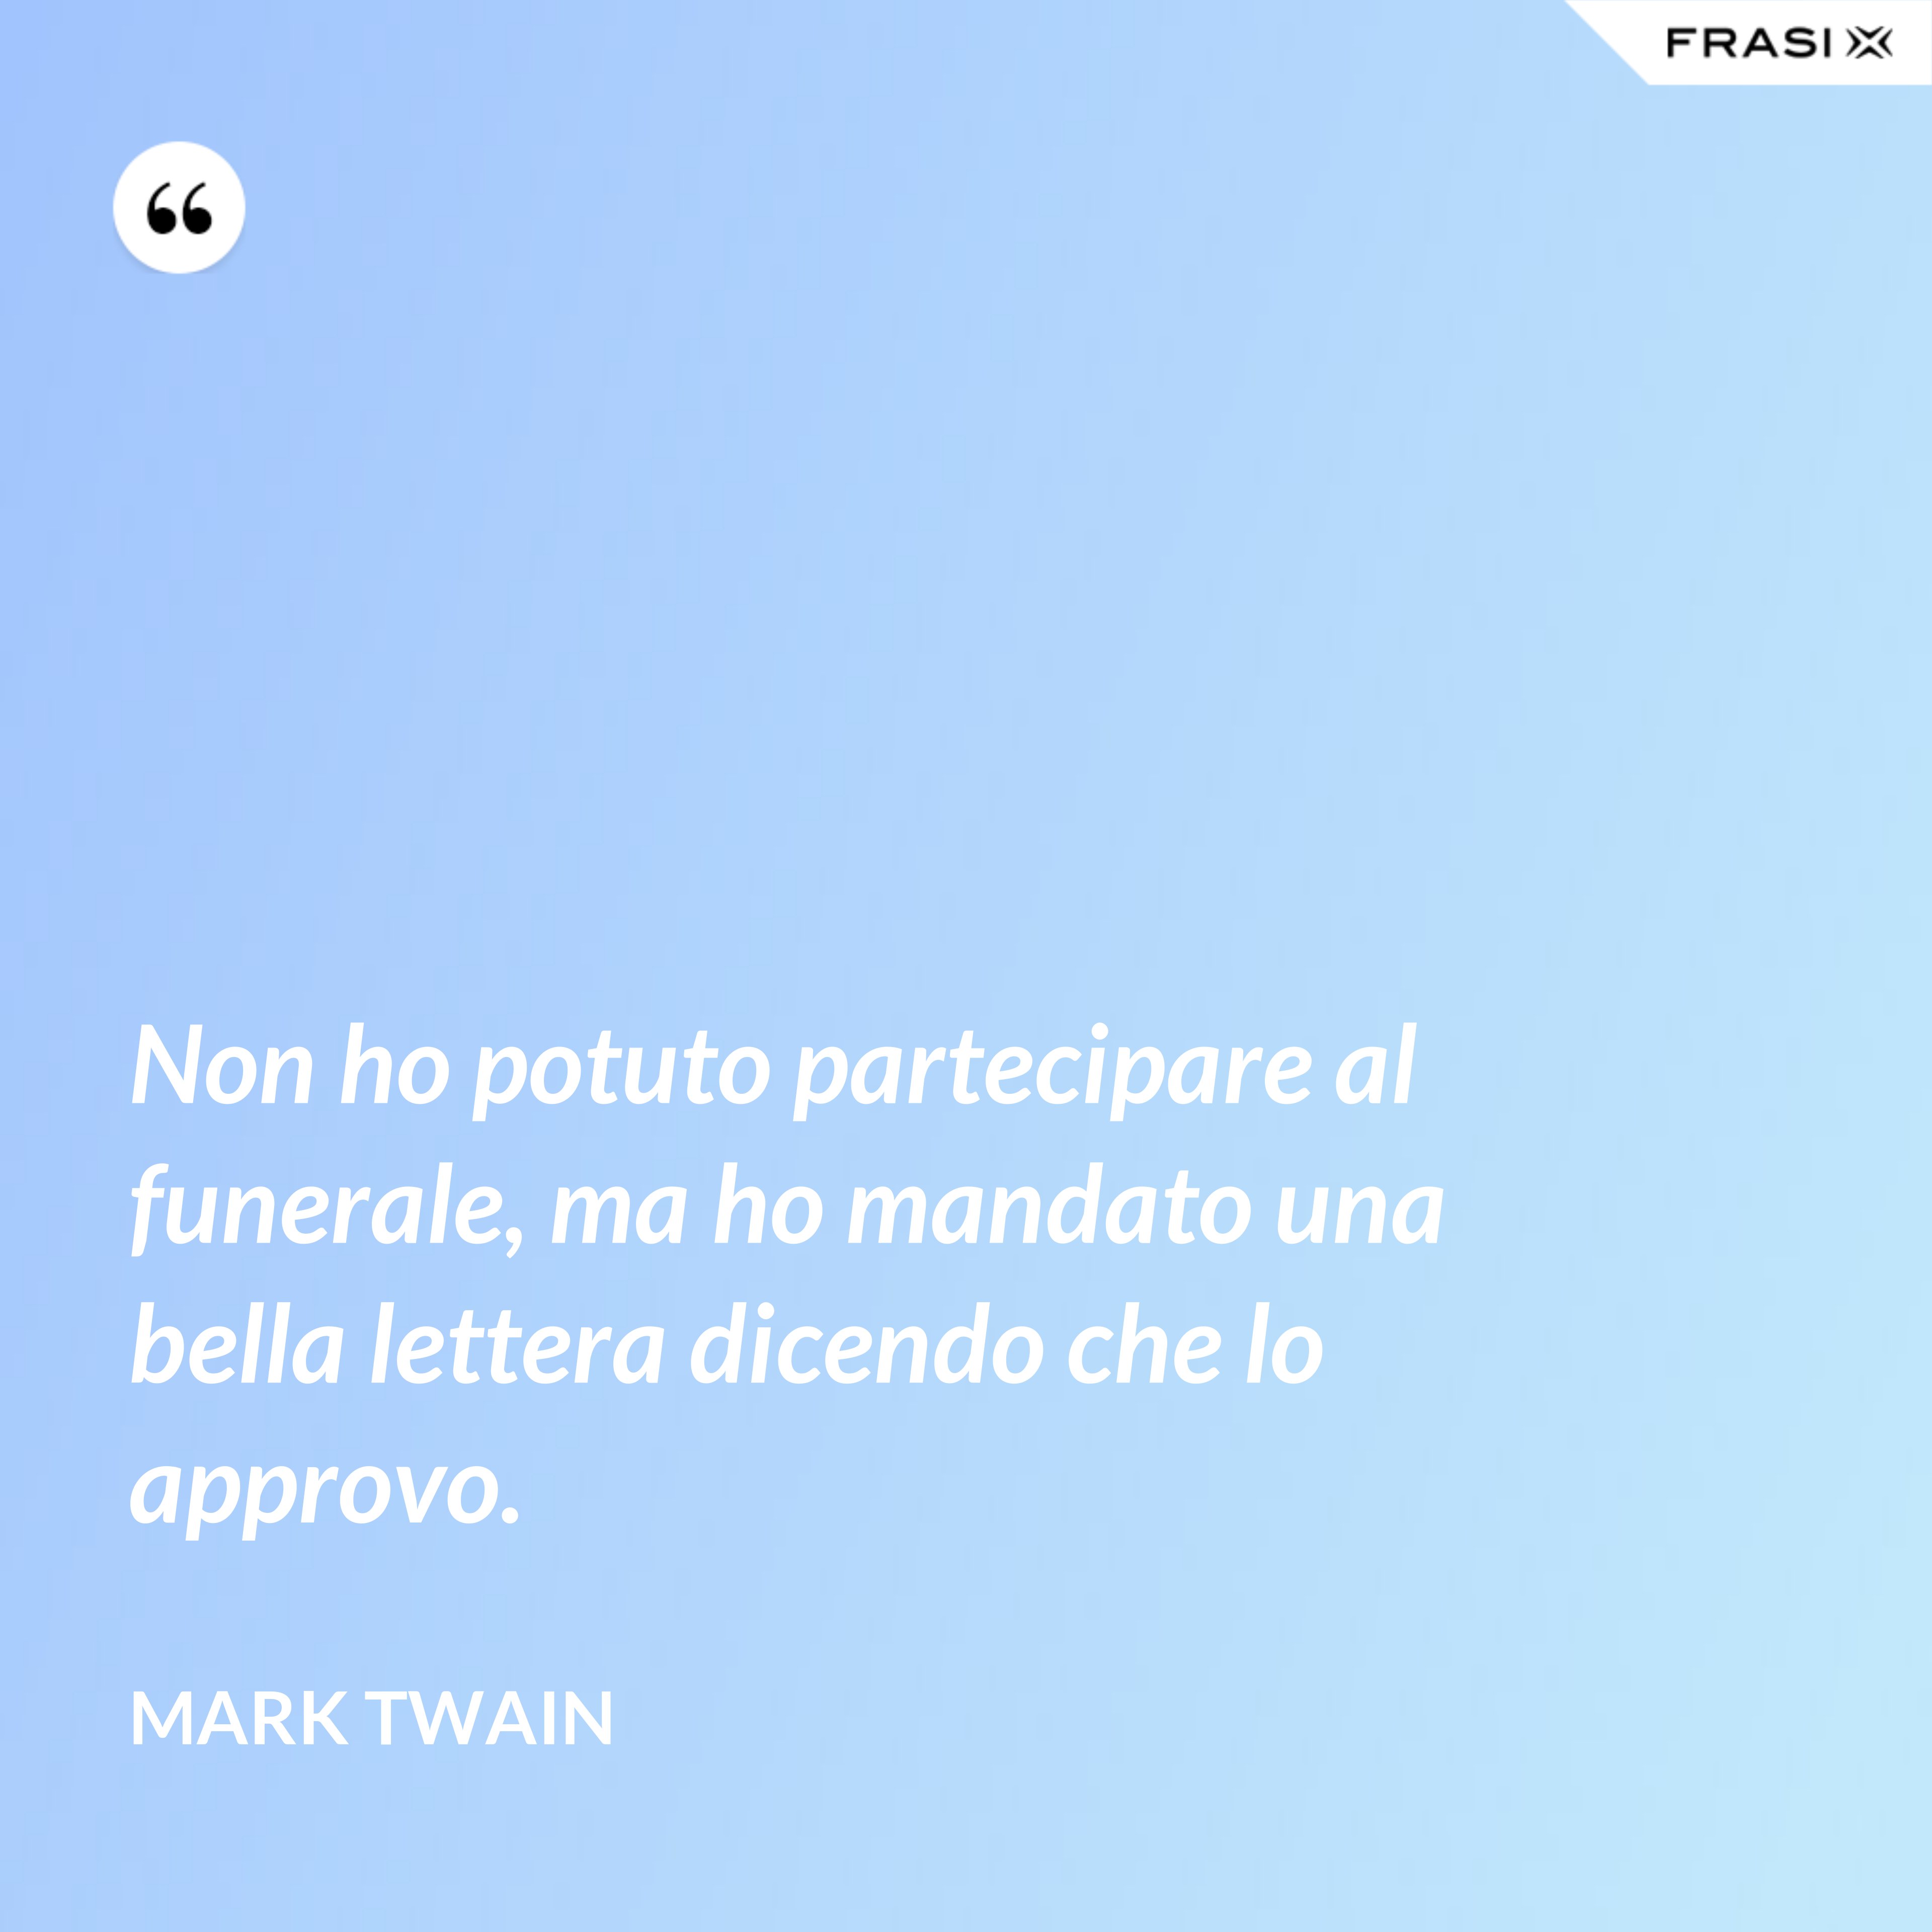 Non ho potuto partecipare al funerale, ma ho mandato una bella lettera dicendo che lo approvo. - Mark Twain